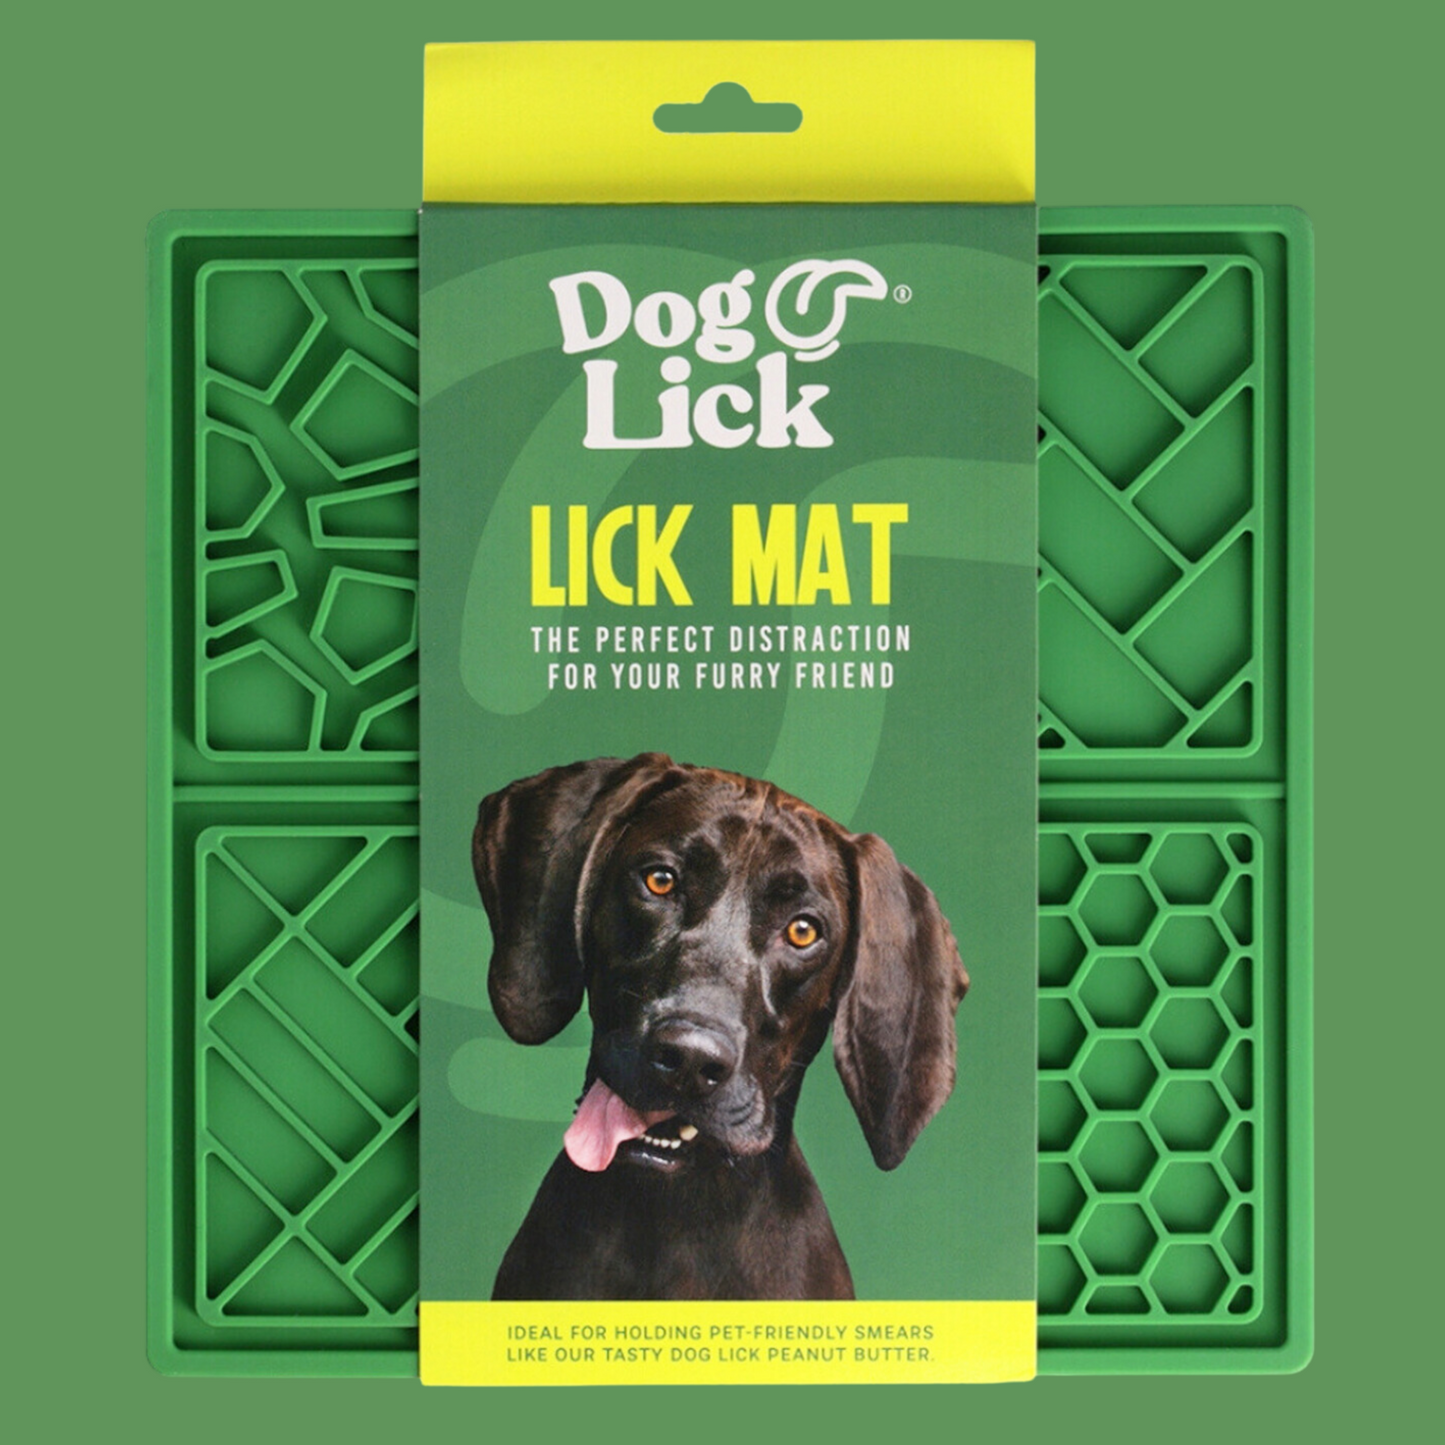 Dog Lick: Lick Mat